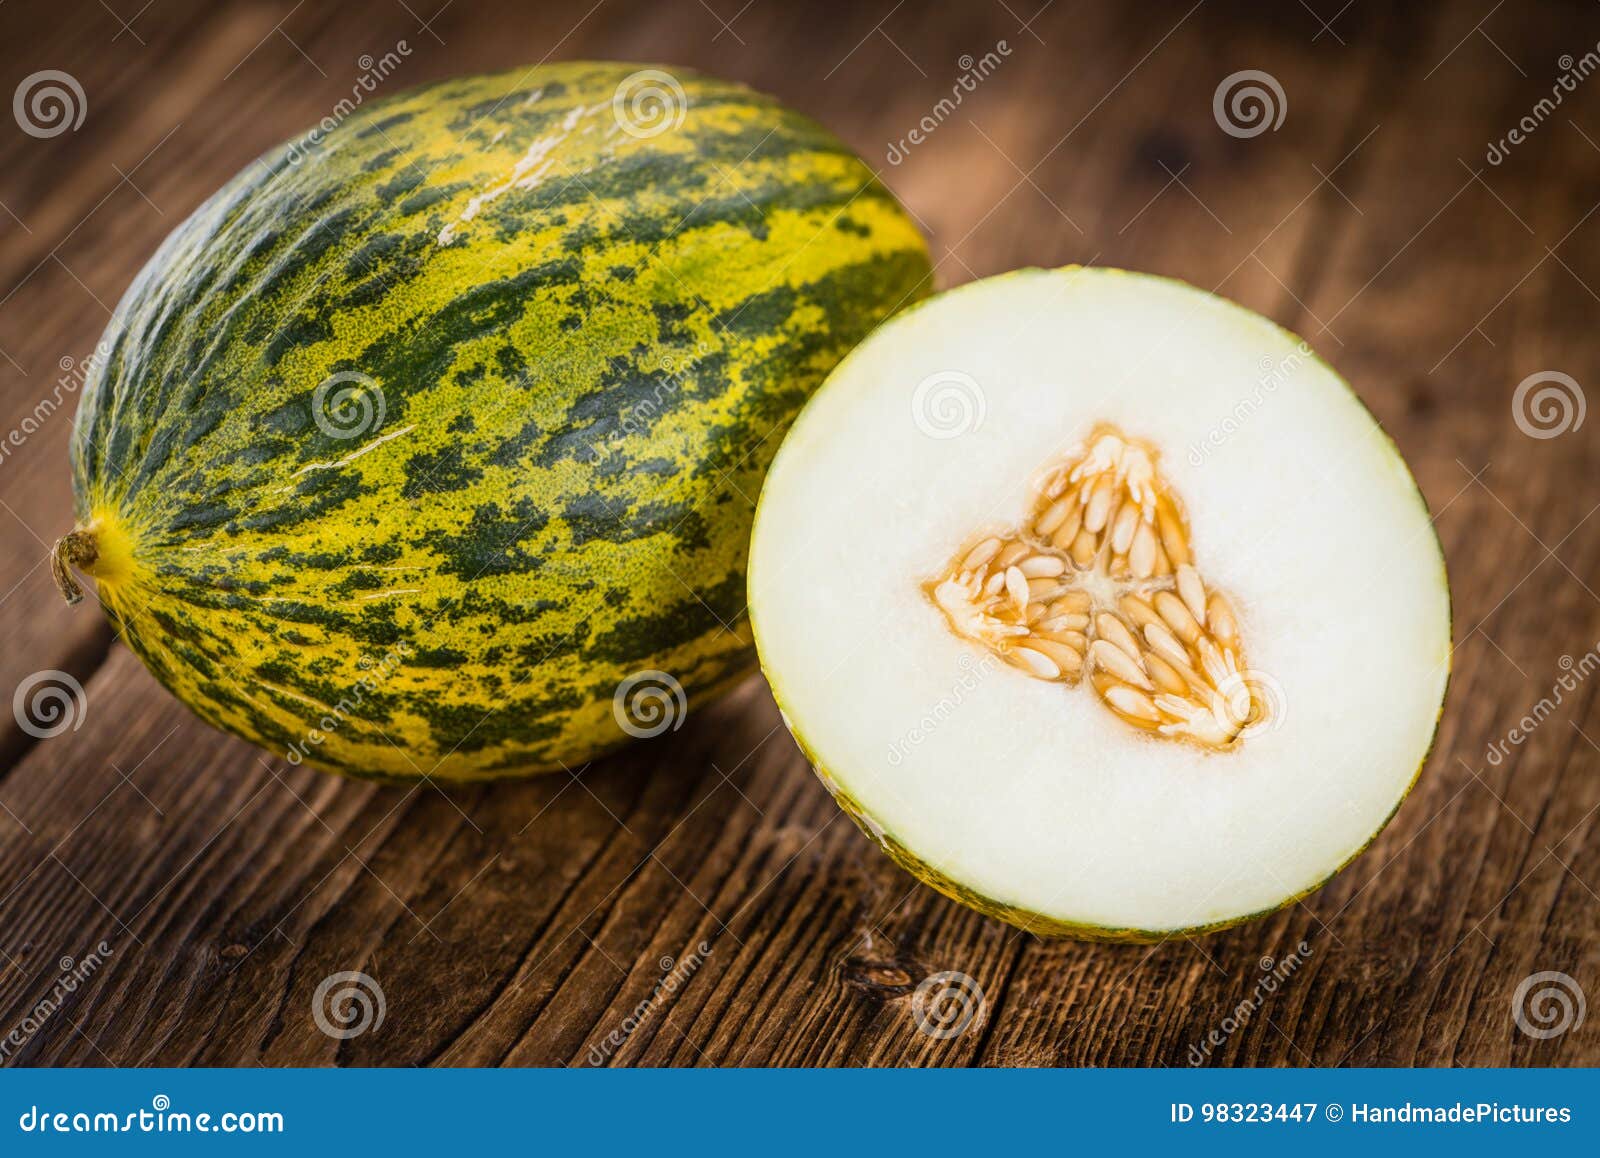 futuro melons selective focus